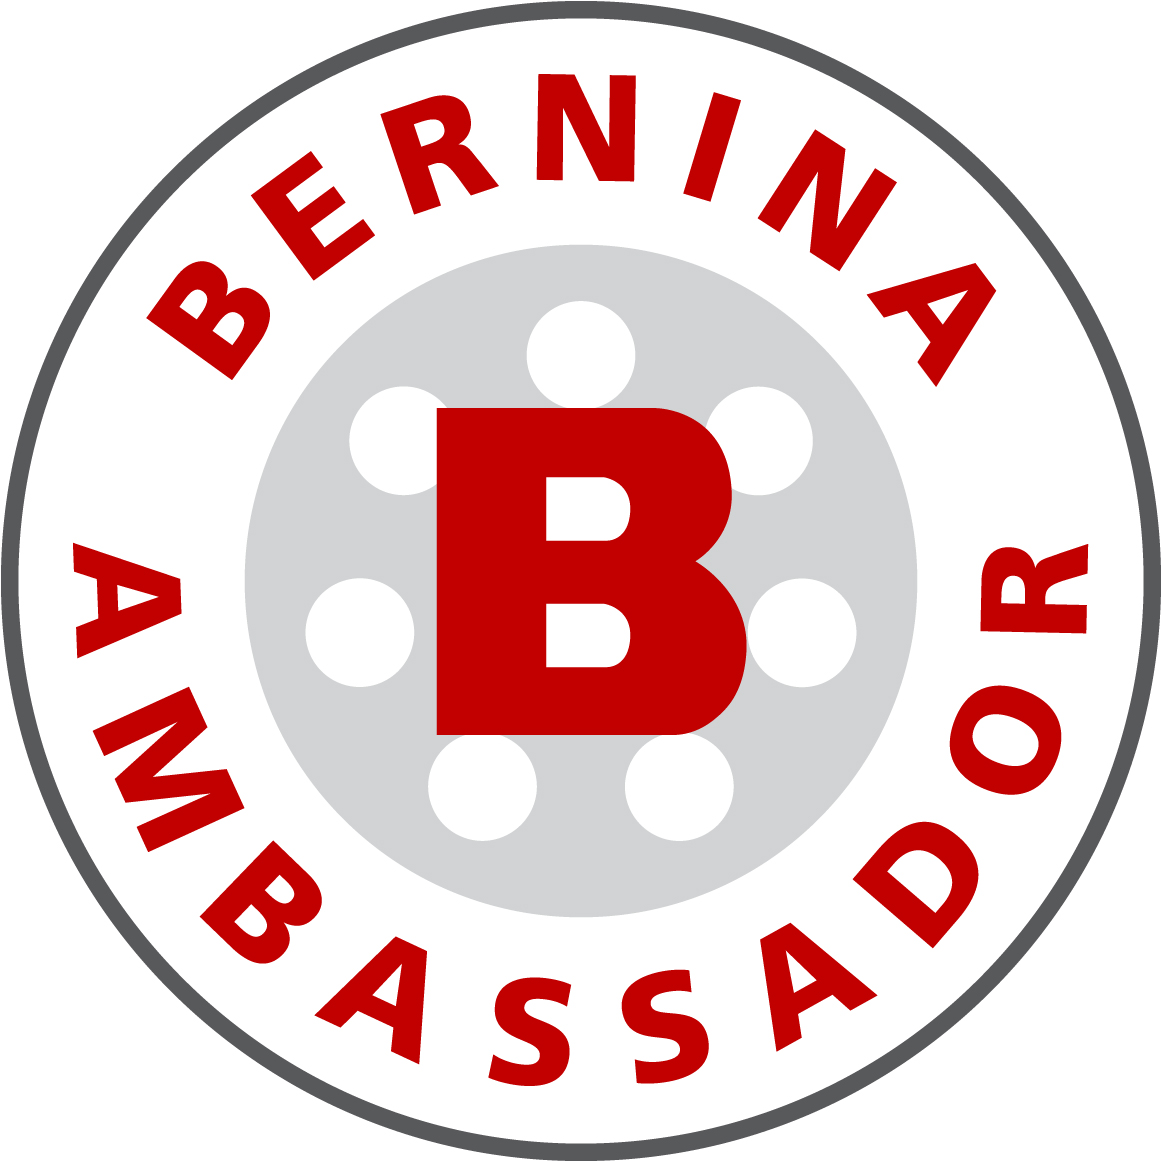 Bernina Brand Ambassador